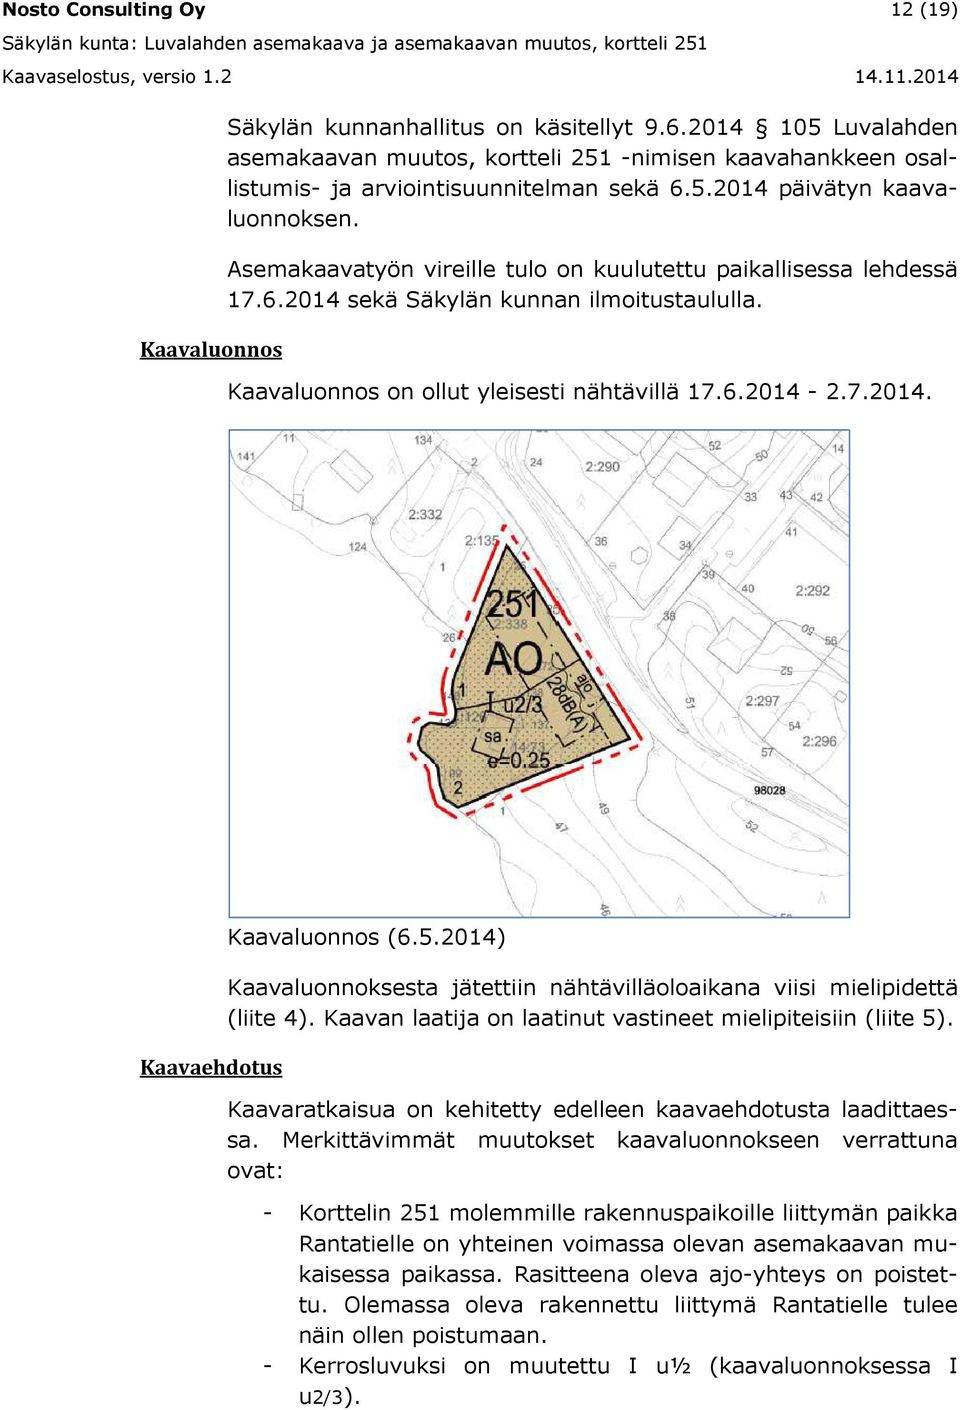 Asemakaavatyön vireille tulo on kuulutettu paikallisessa lehdessä 17.6.2014 sekä Säkylän kunnan ilmoitustaululla. Kaavaluonnos on ollut yleisesti nähtävillä 17.6.2014-2.7.2014. Kaavaehdotus Kaavaluonnos (6.